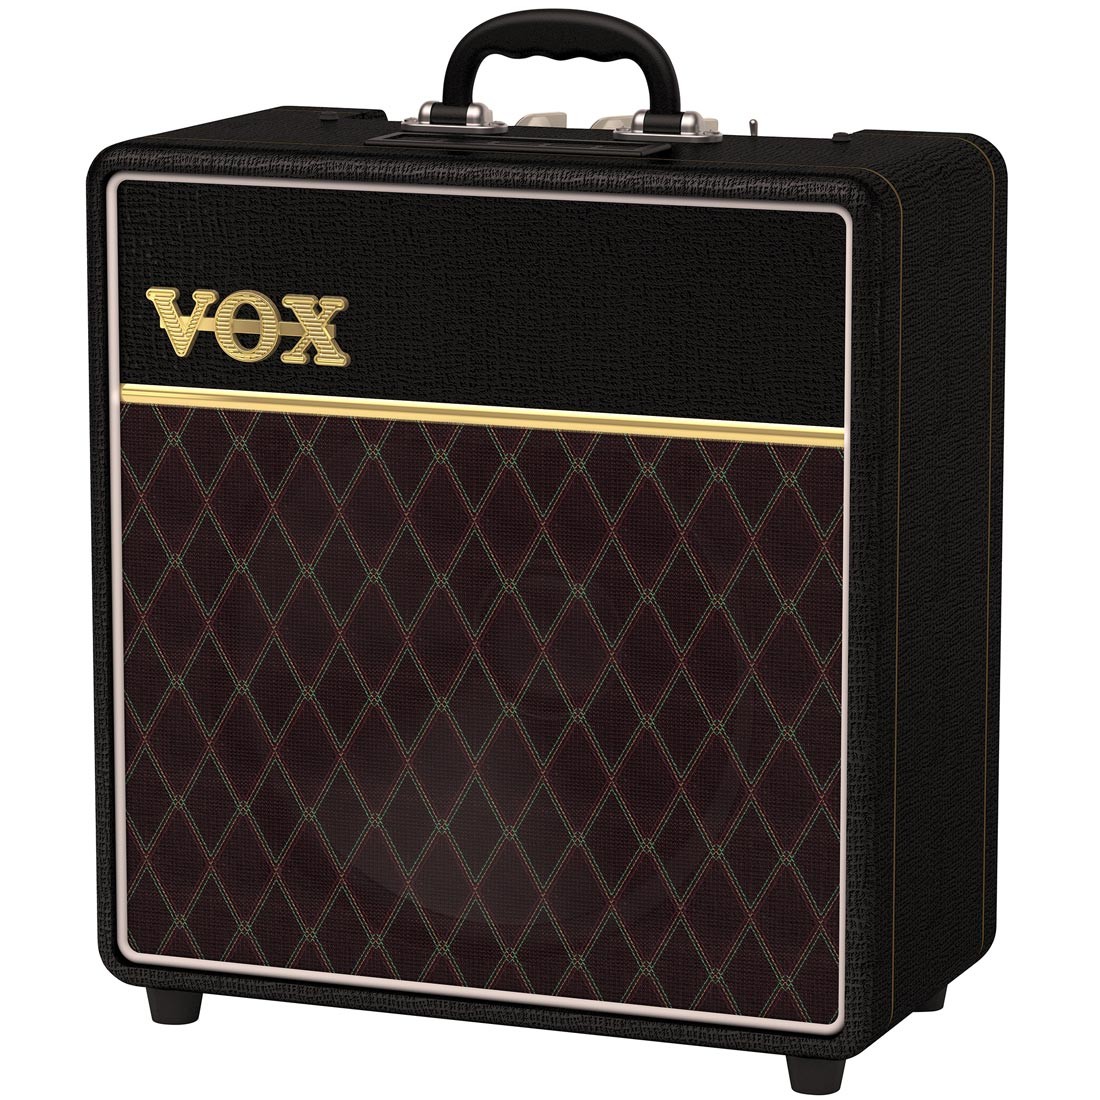 VOX AC4C1-12 Electric Guitar Amplifier